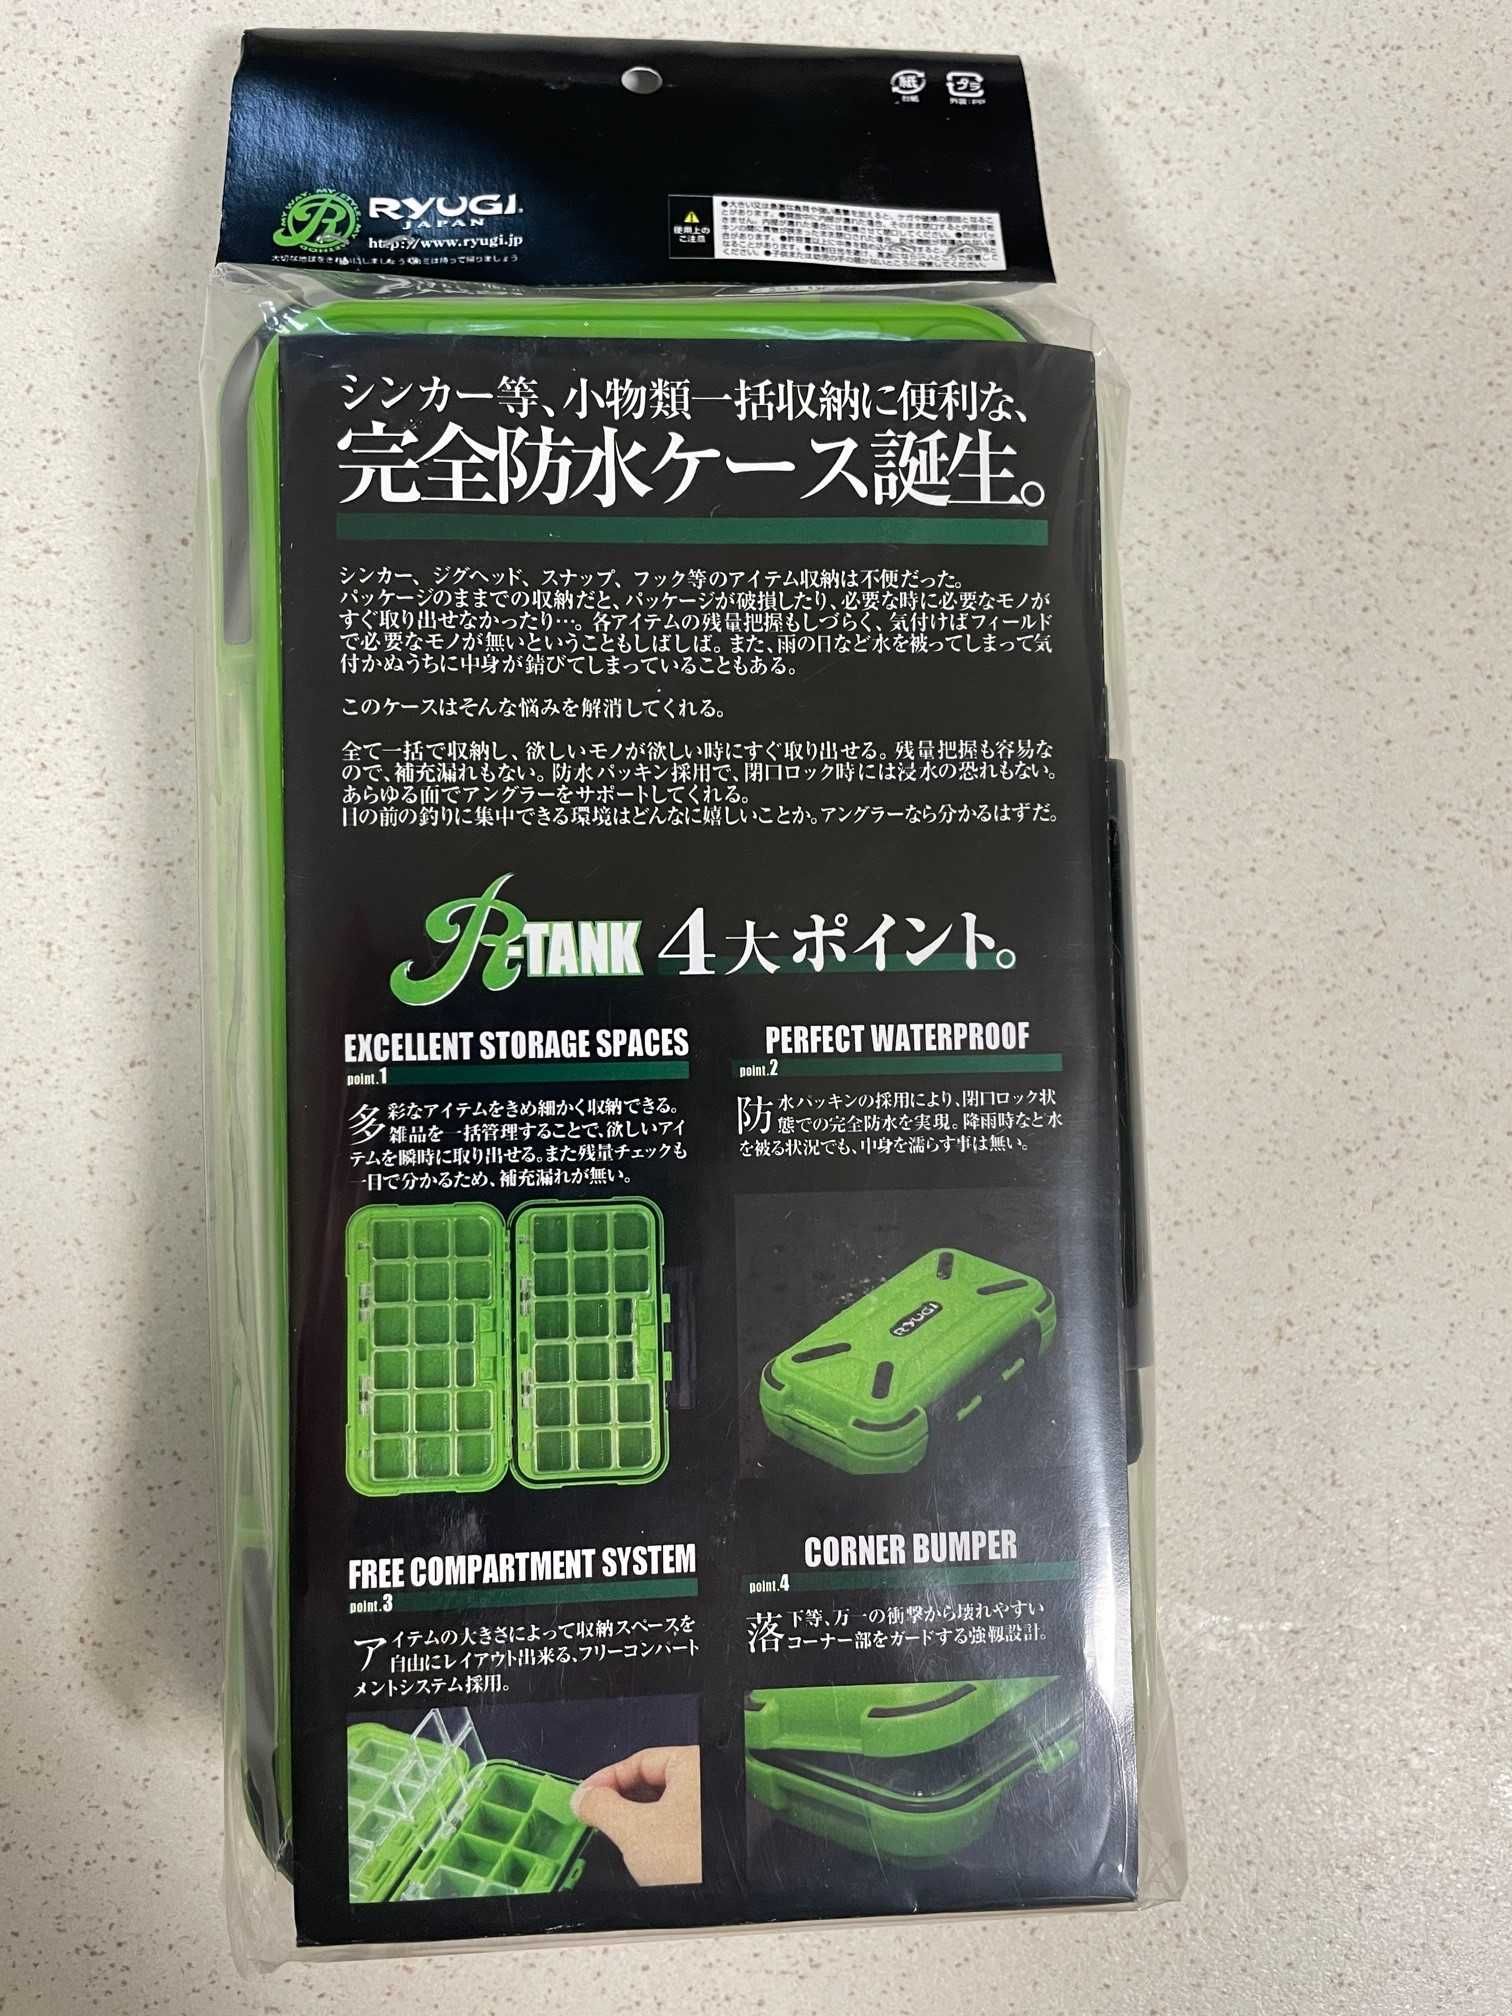 R-tank XL brt050 Ryugi organizer dla wędkarza nowy pudełko XL (202465)